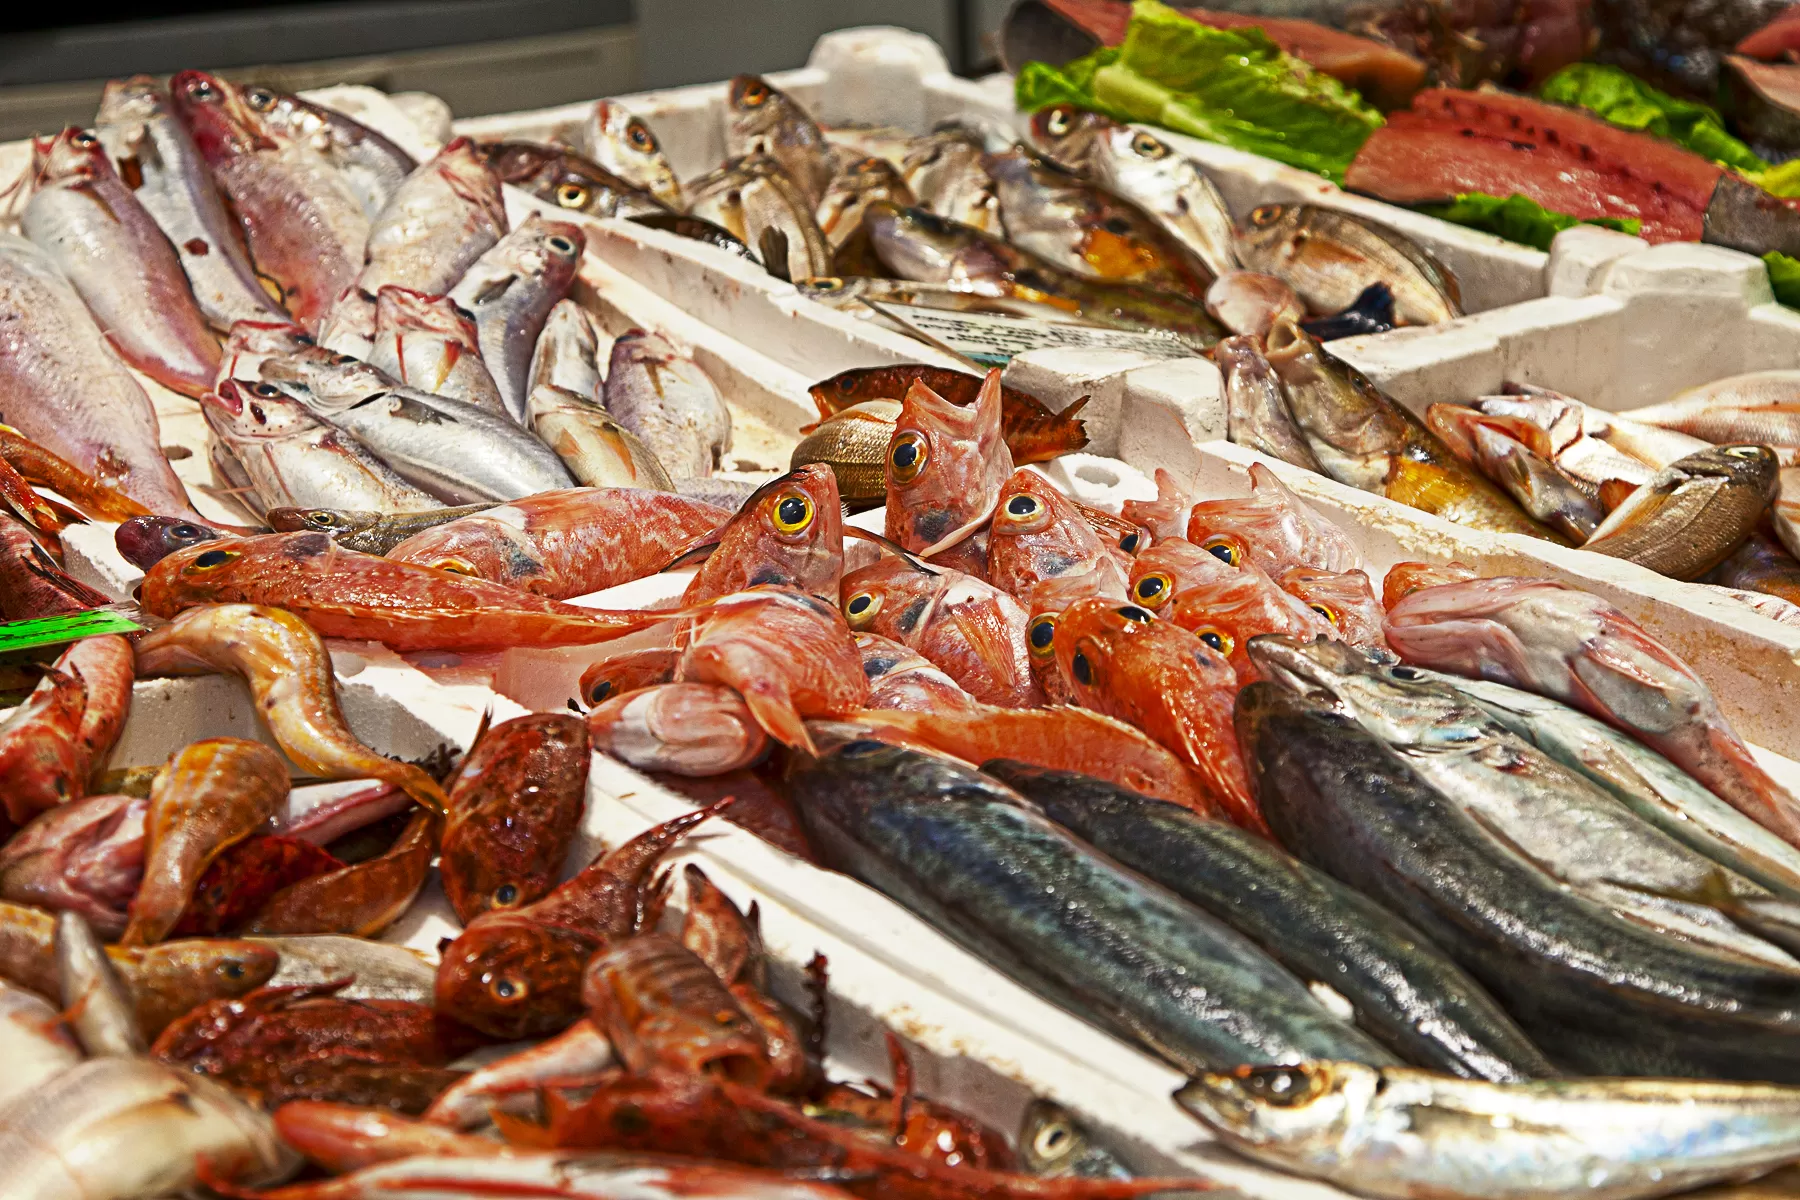 Fish product. Праздник семи рыб (festa dei sette pesci) - Италия. Рыба в ассортименте. Рыба на прилавке. Рыбный прилавок.